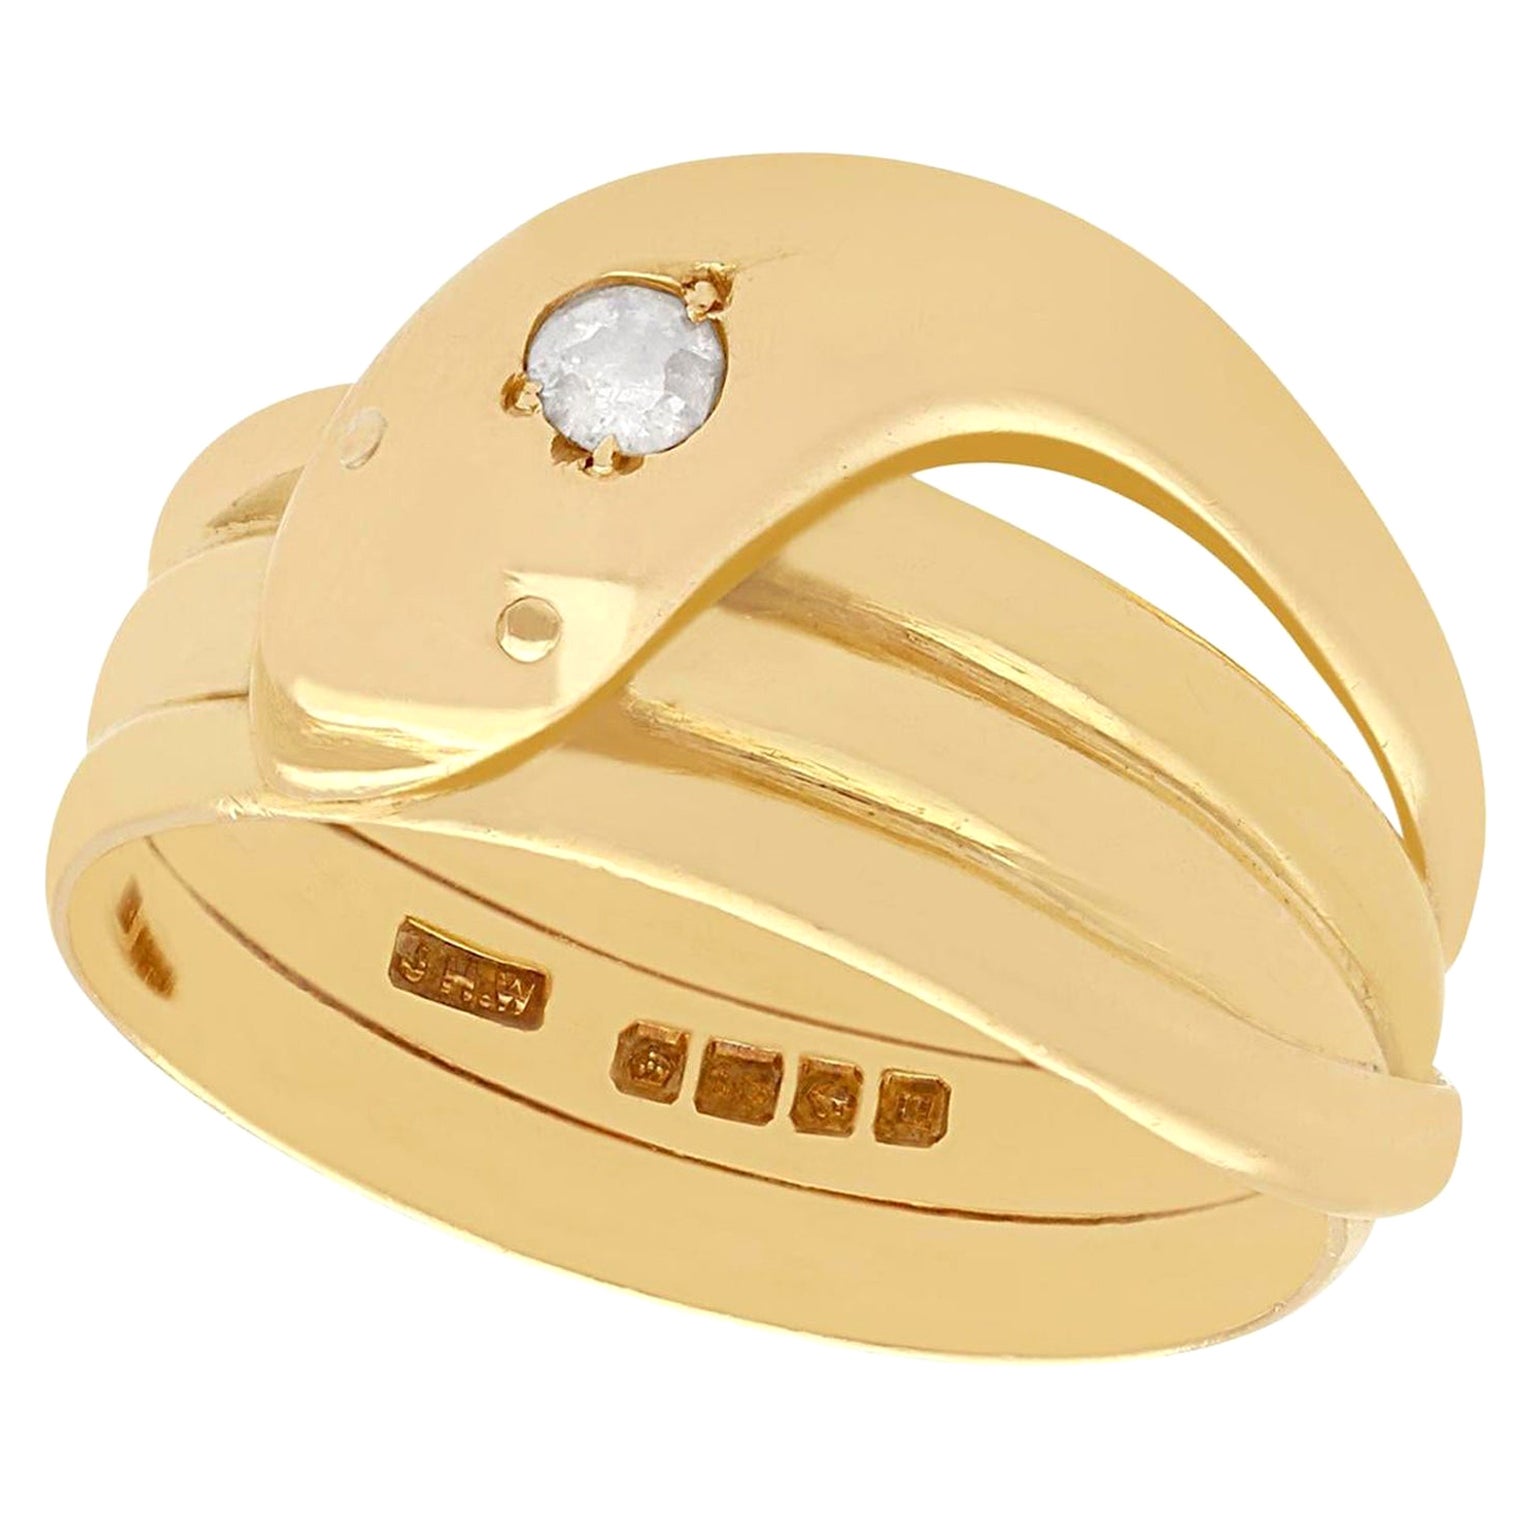 Gold Ring For Women के ये नायाब डिजाइन आ रहे हैं लड़कियों को पसंद, कीमत  उम्मीद से भी कम | gold ring for women adorned with precious gemstones is a  perfect choice